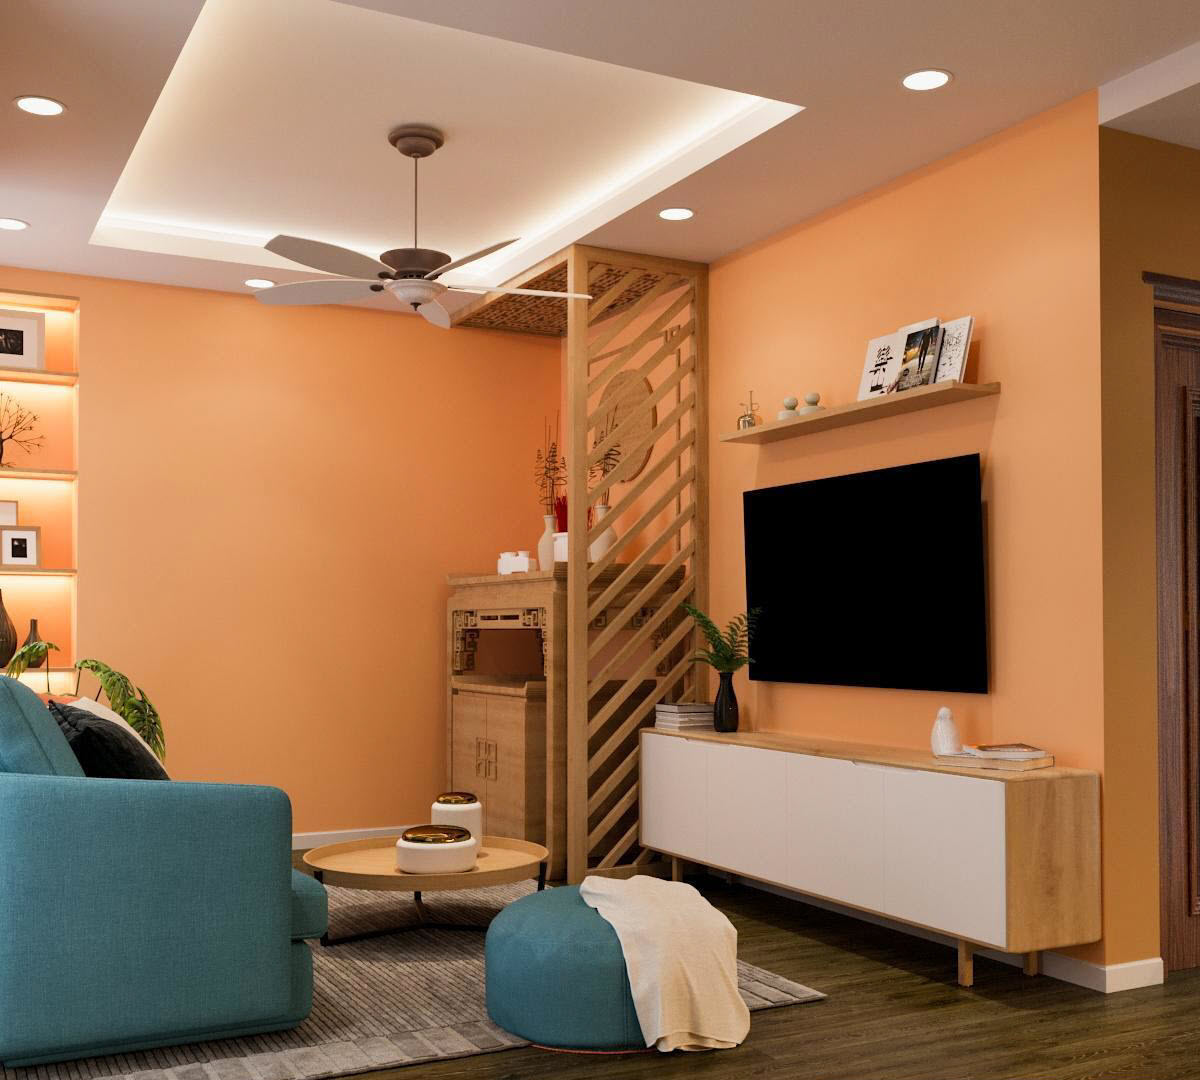 Chọn màu cam đào cho sơn tường phòng khách, kiến trúc sư muốn mang lại cảm giác tươi vui, thân thiện và ấm áp cho không gian này. Lam gỗ che chắn tủ thờ một cách tinh tế.